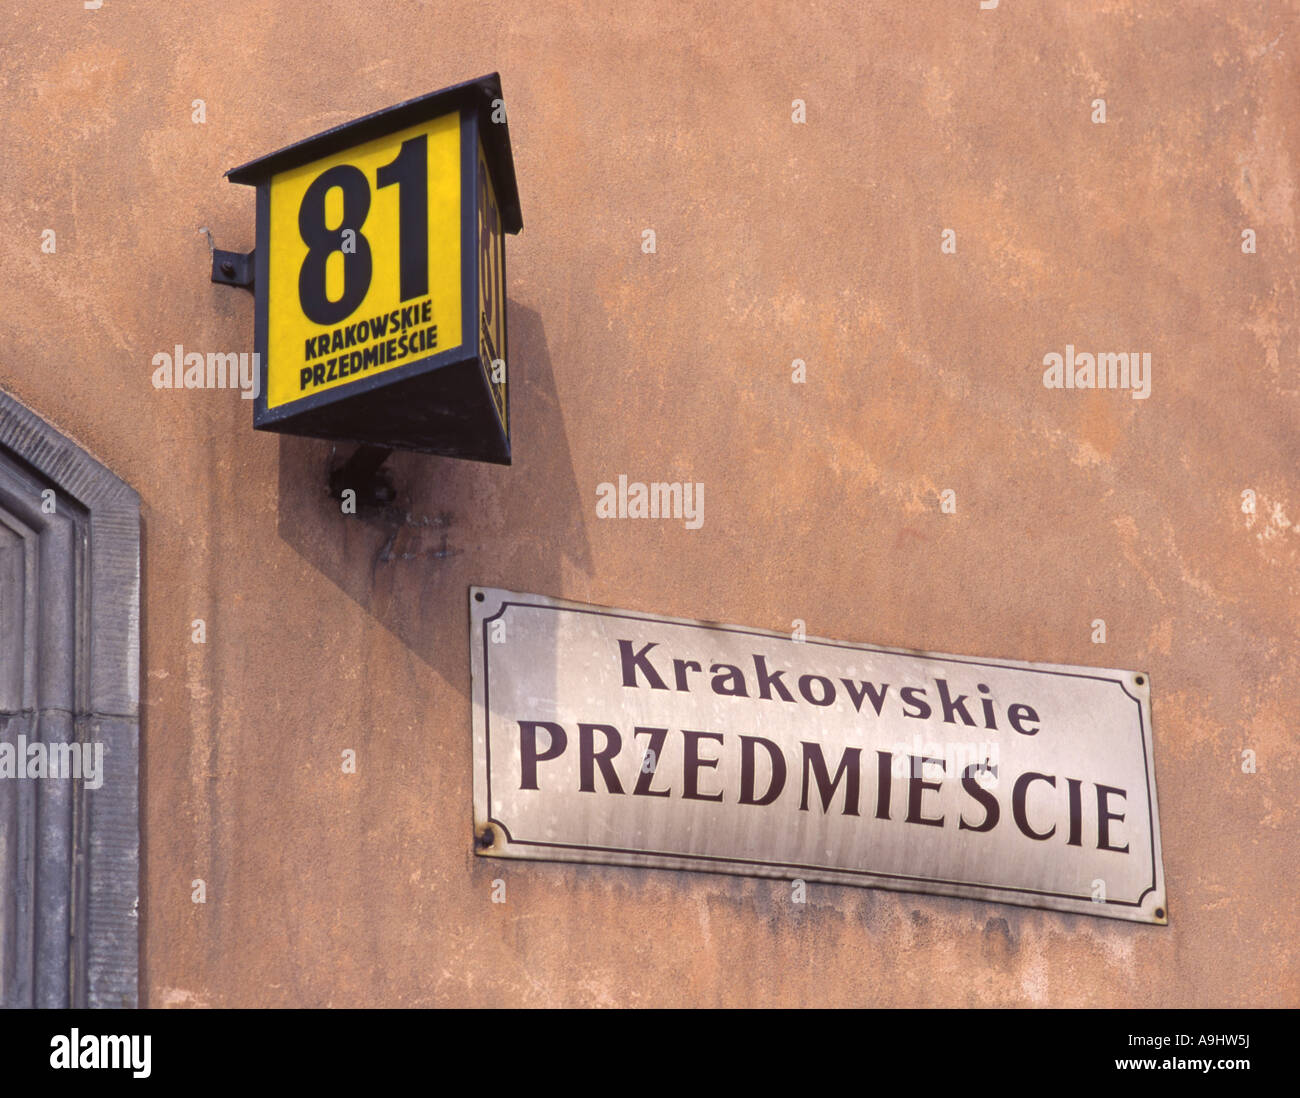 Warsaw, Poland. Old Street Sign and House Number - Krakowskie Przedmiescie 81 Stock Photo